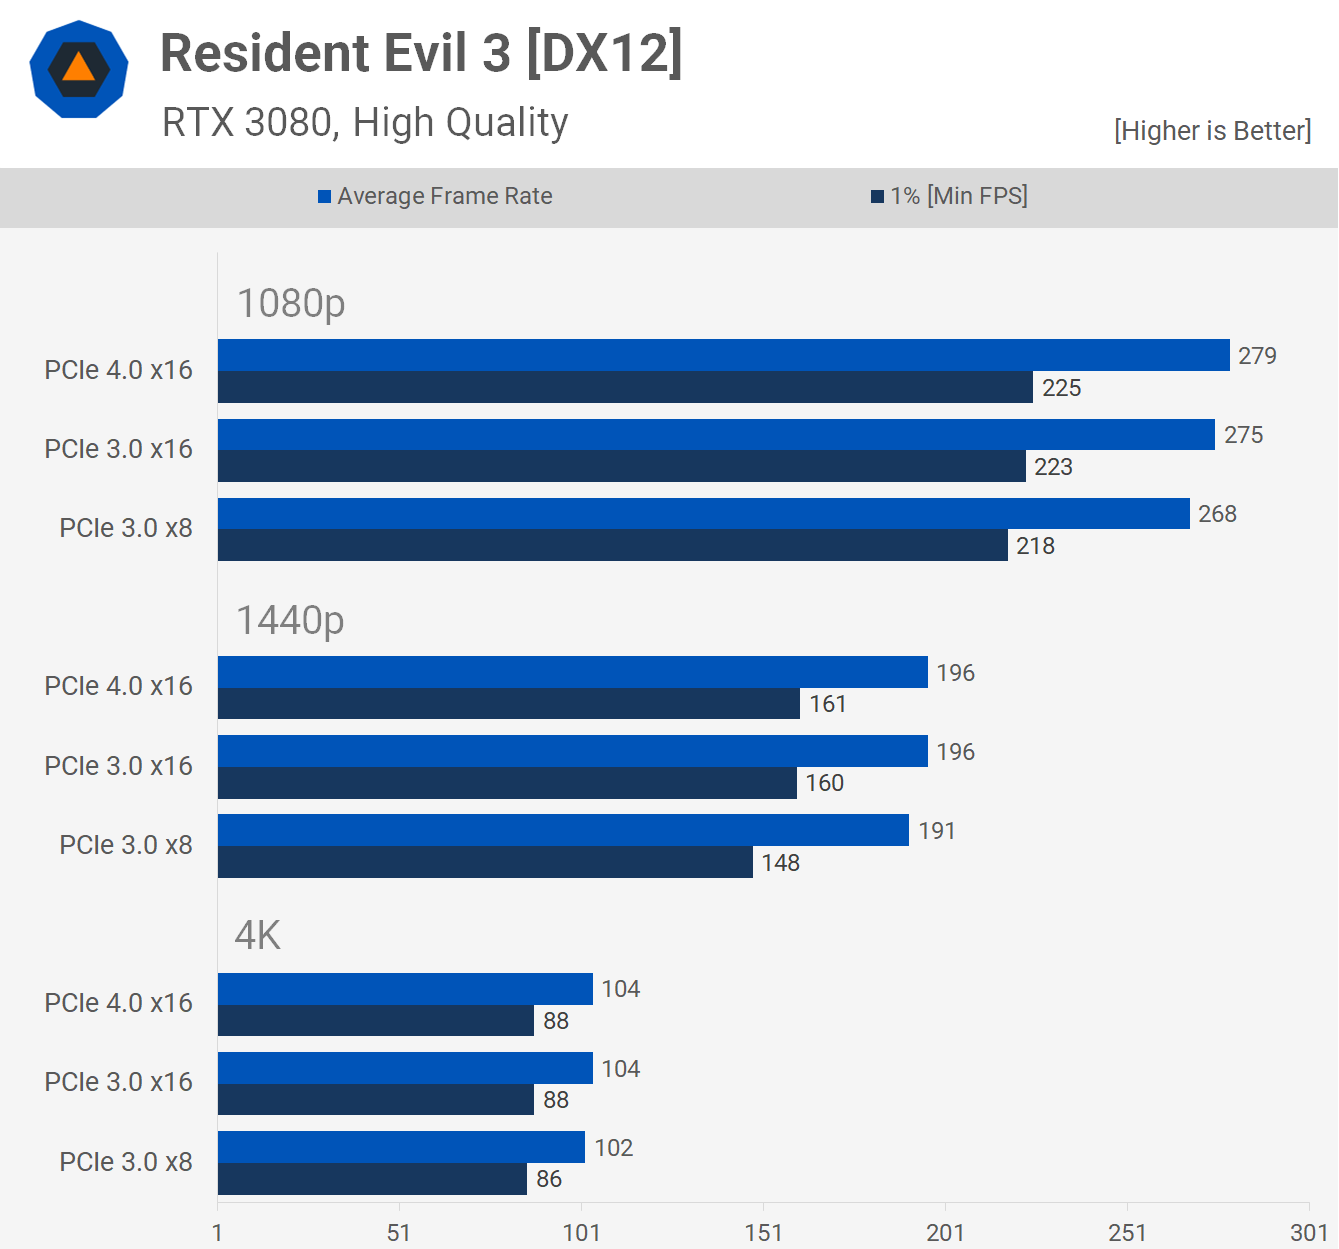 Resident Evil 3 cho kết quả hỗn hợp, ở 1080p PCIe 4.0 x16